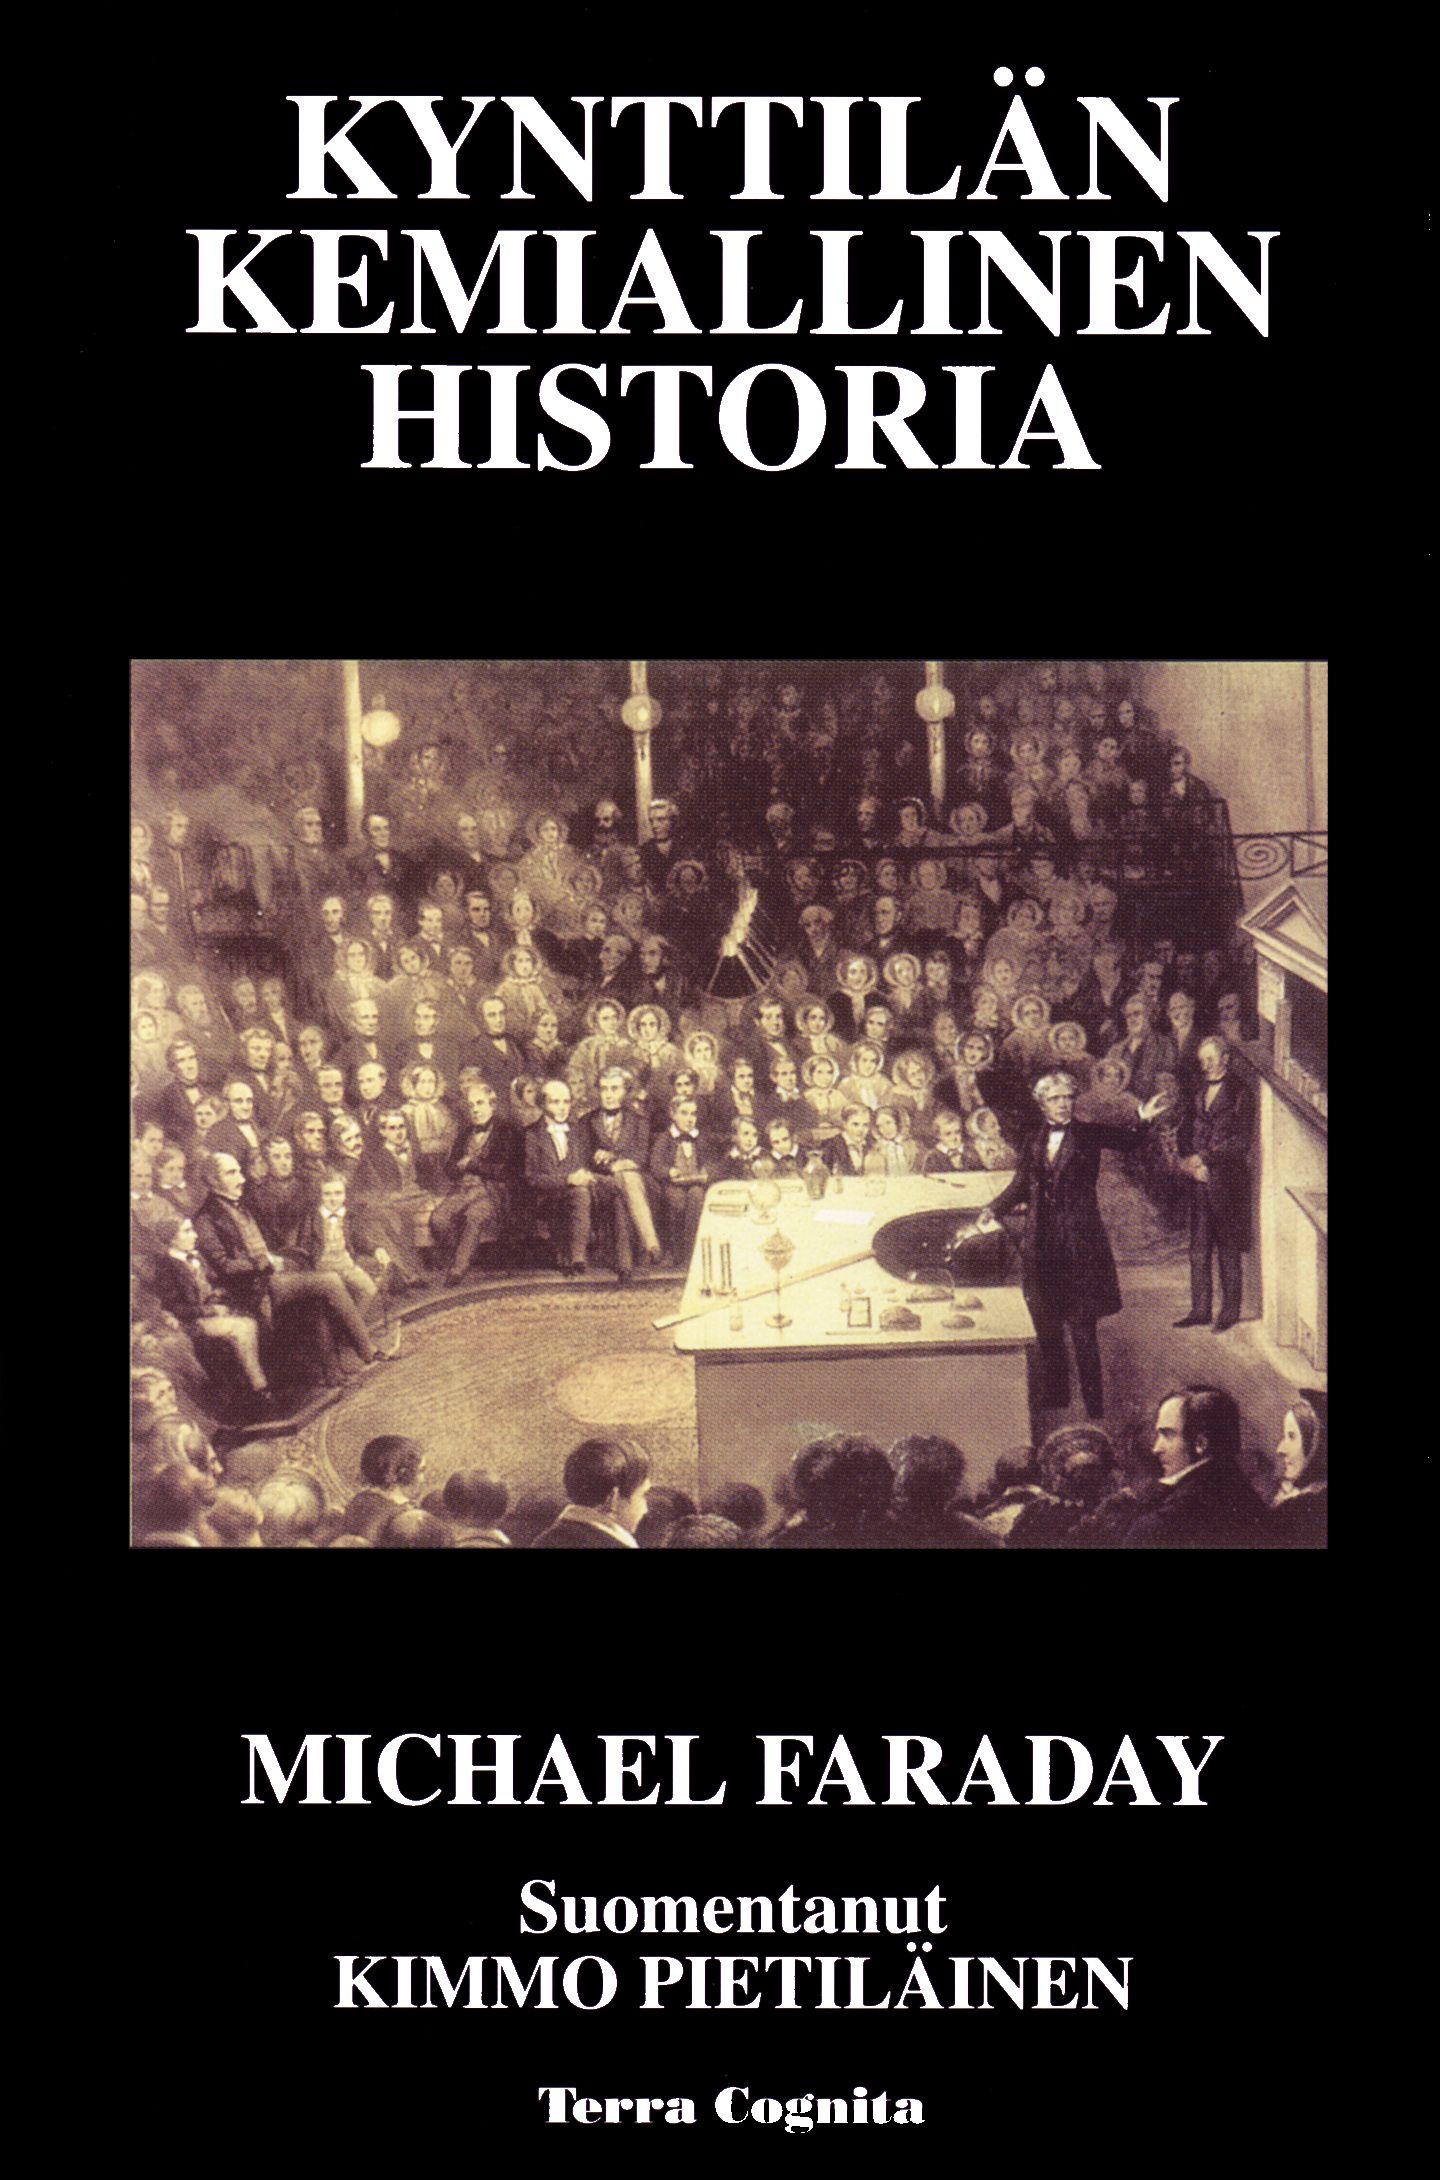 Michael Faraday : Kynttilän kemiallinen historia